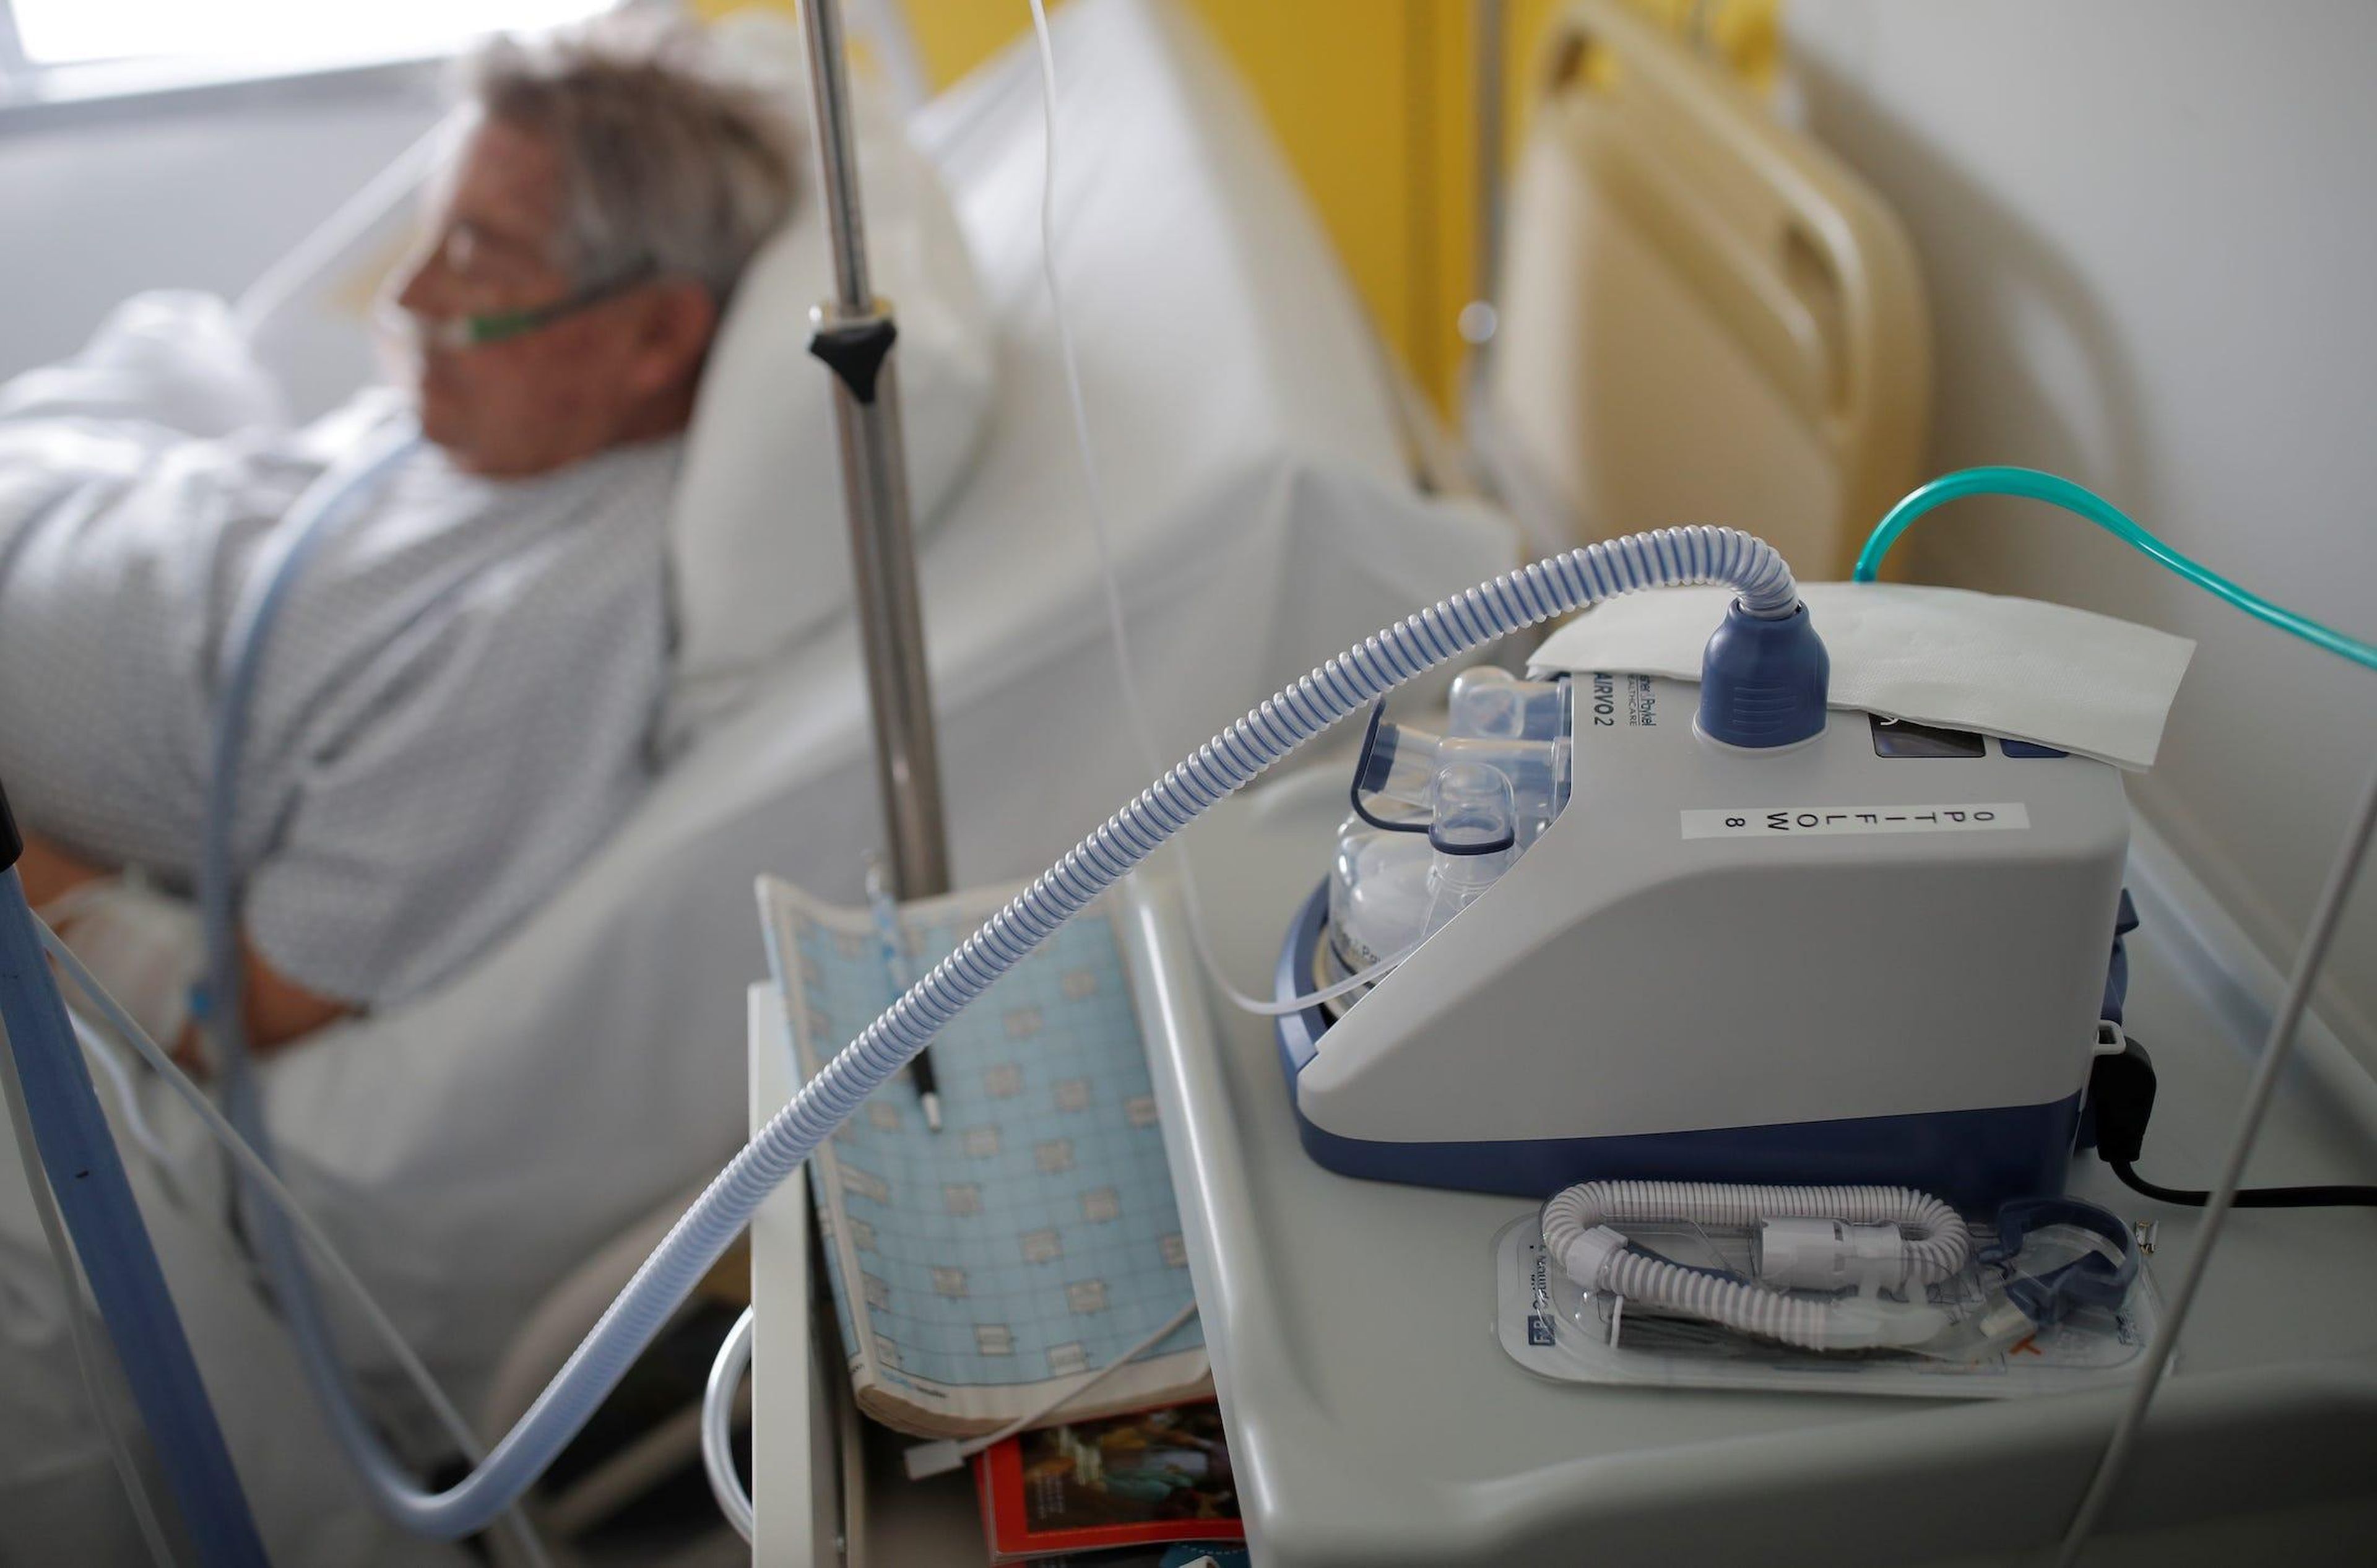 Un paciente que padece COVID-19 es tratado en un hospital de neumología en Vannes, Francia, el 20 de marzo de 2020.